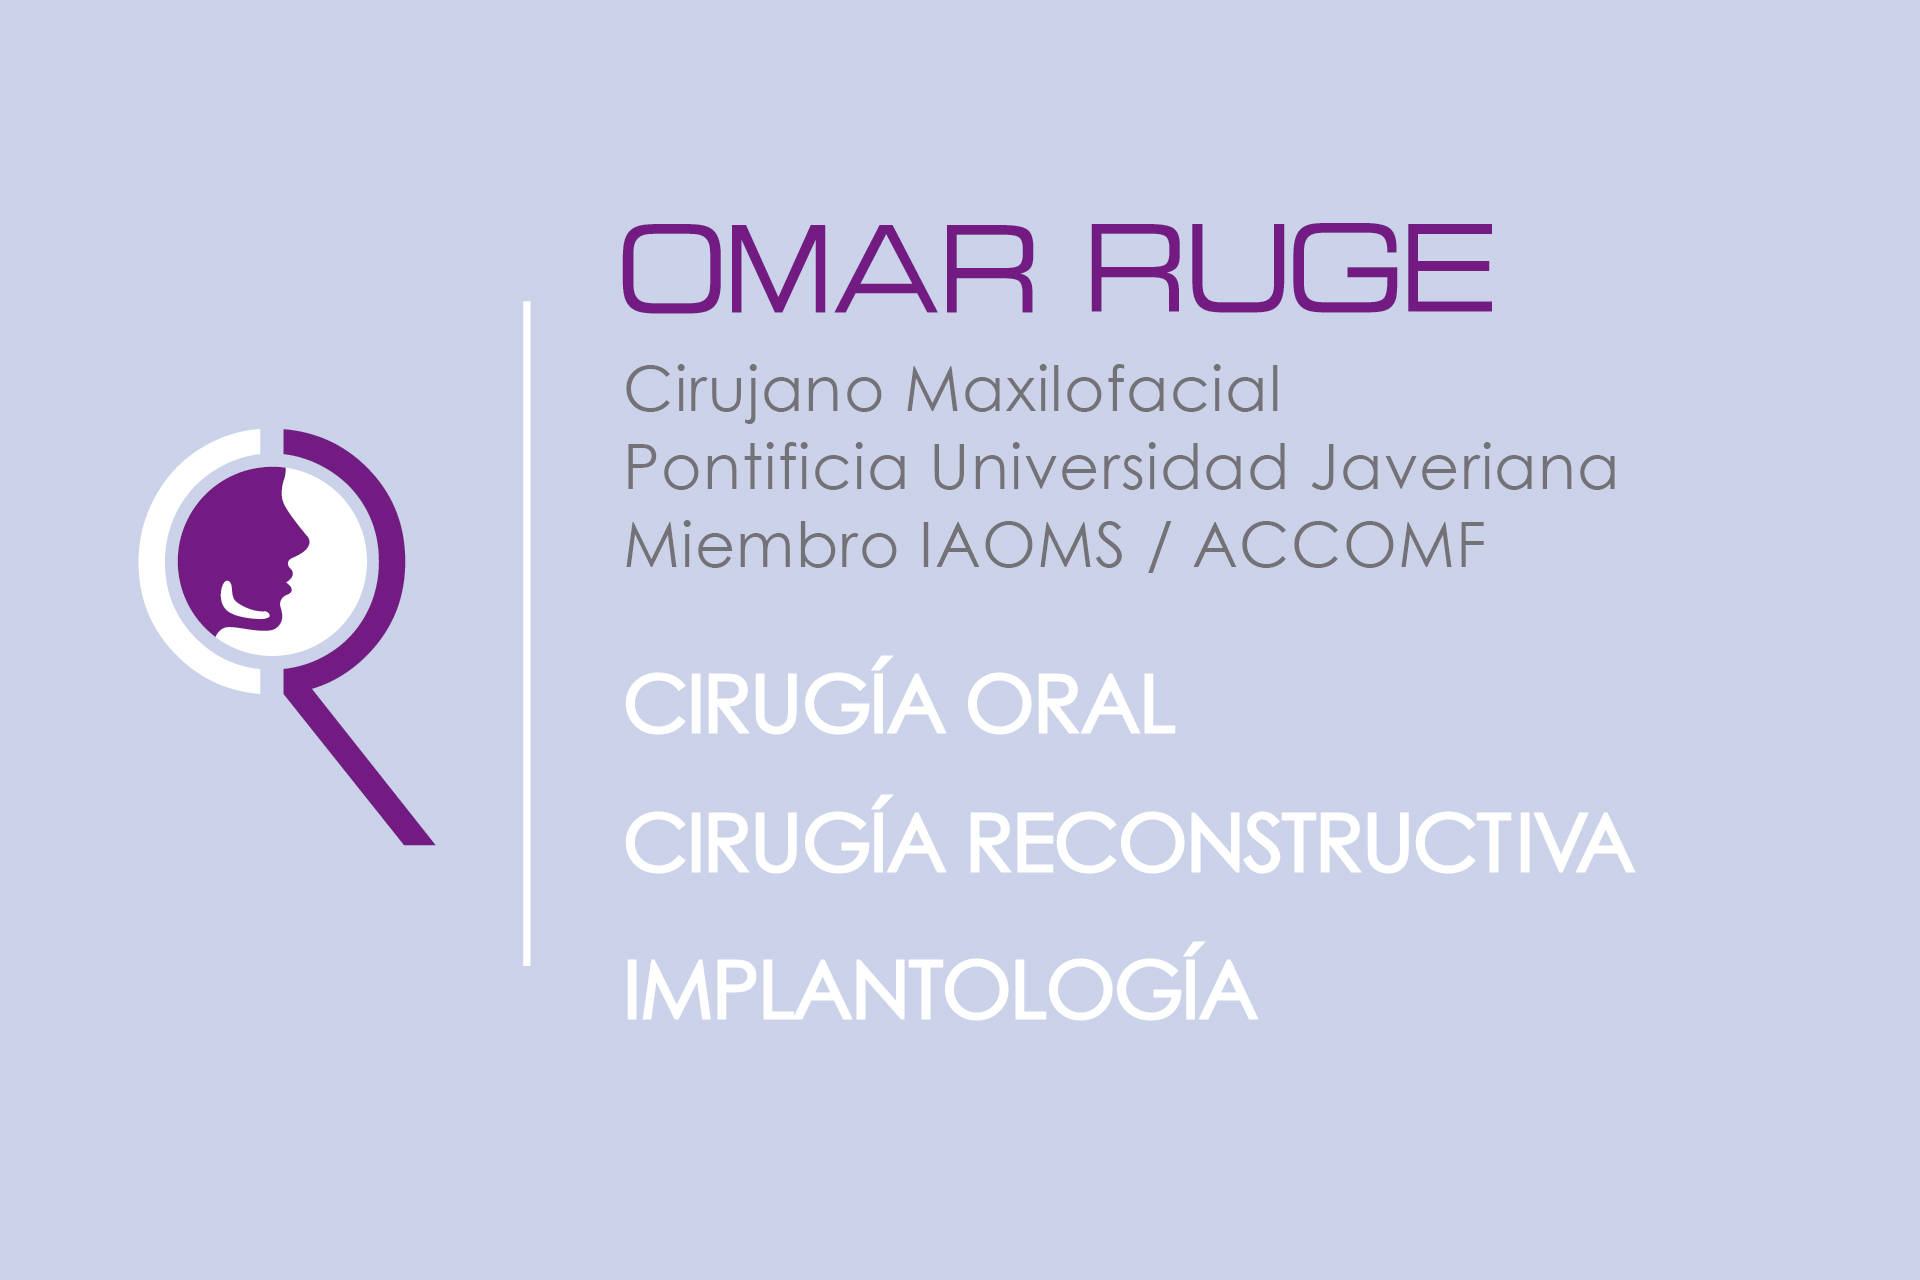  DR. OMAR RUGE